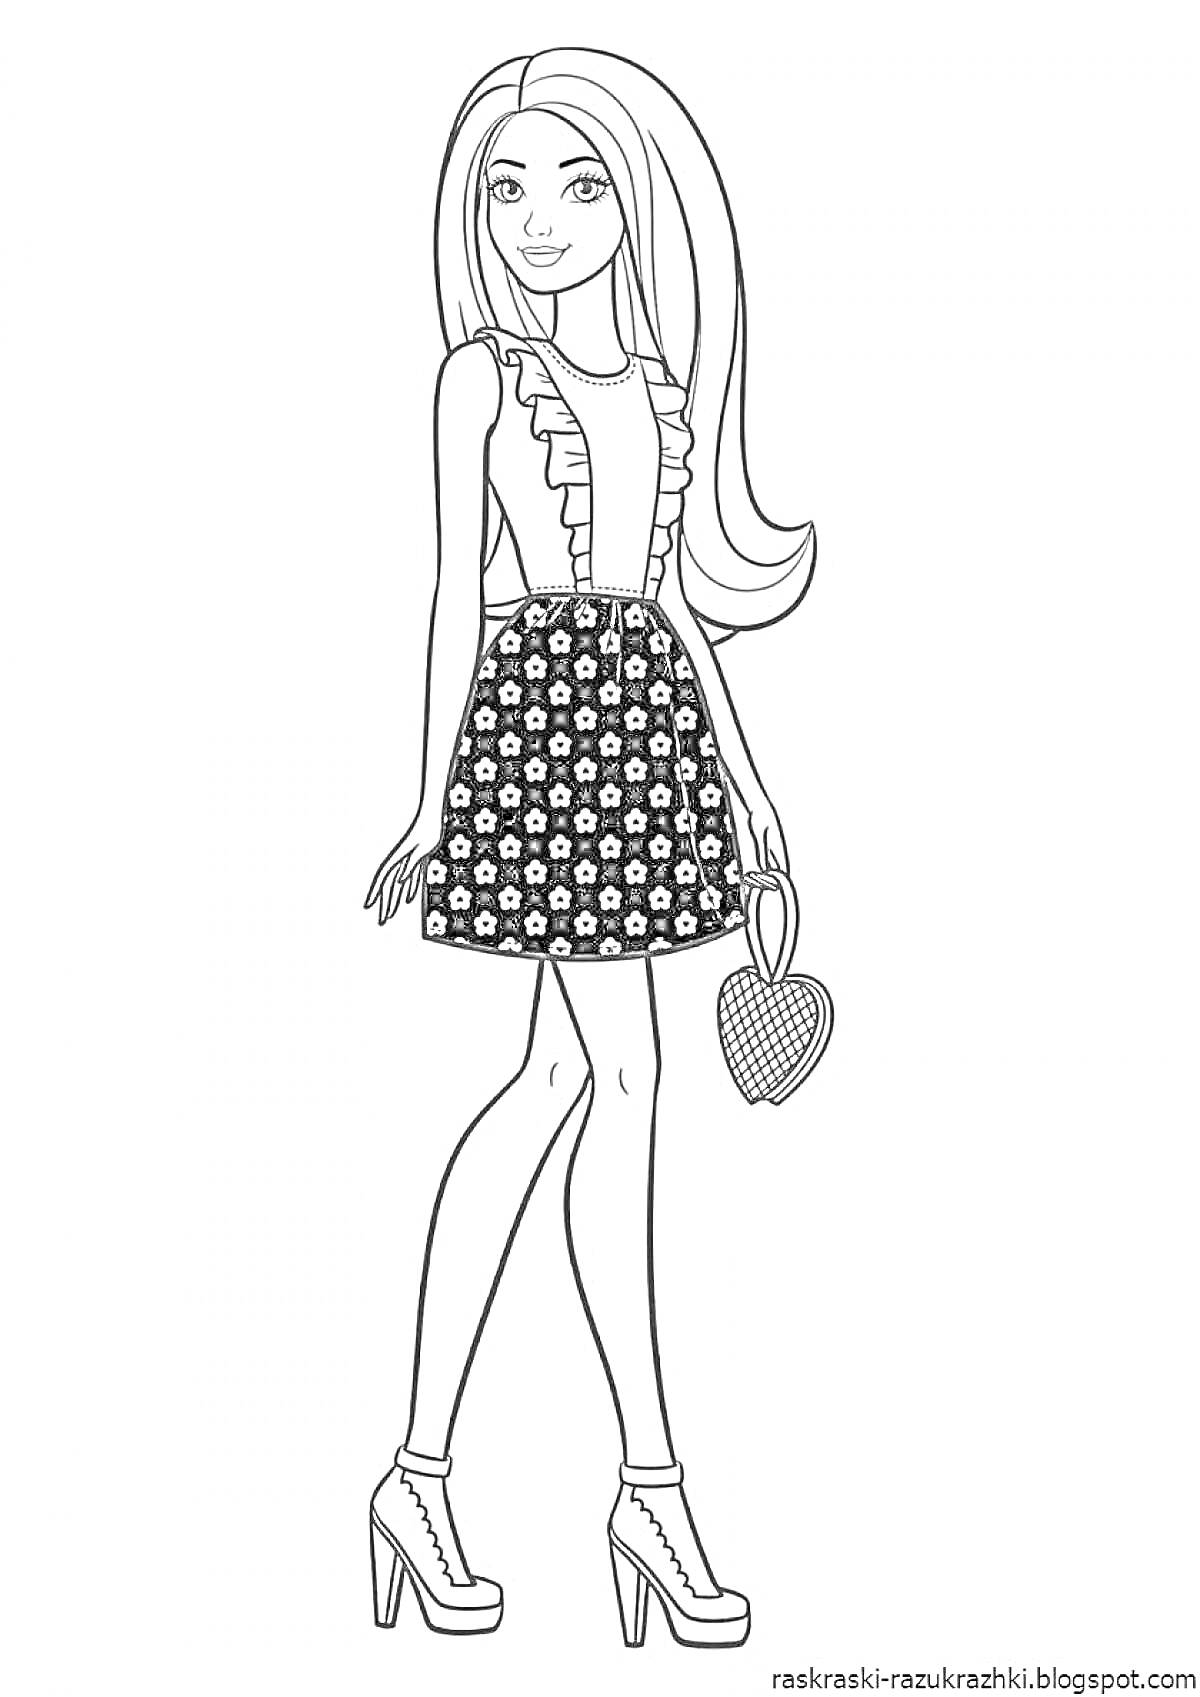 Раскраска Девушка с длинными волосами в платье с цветочным узором, держащая сумочку в форме сердца и на высоких каблуках